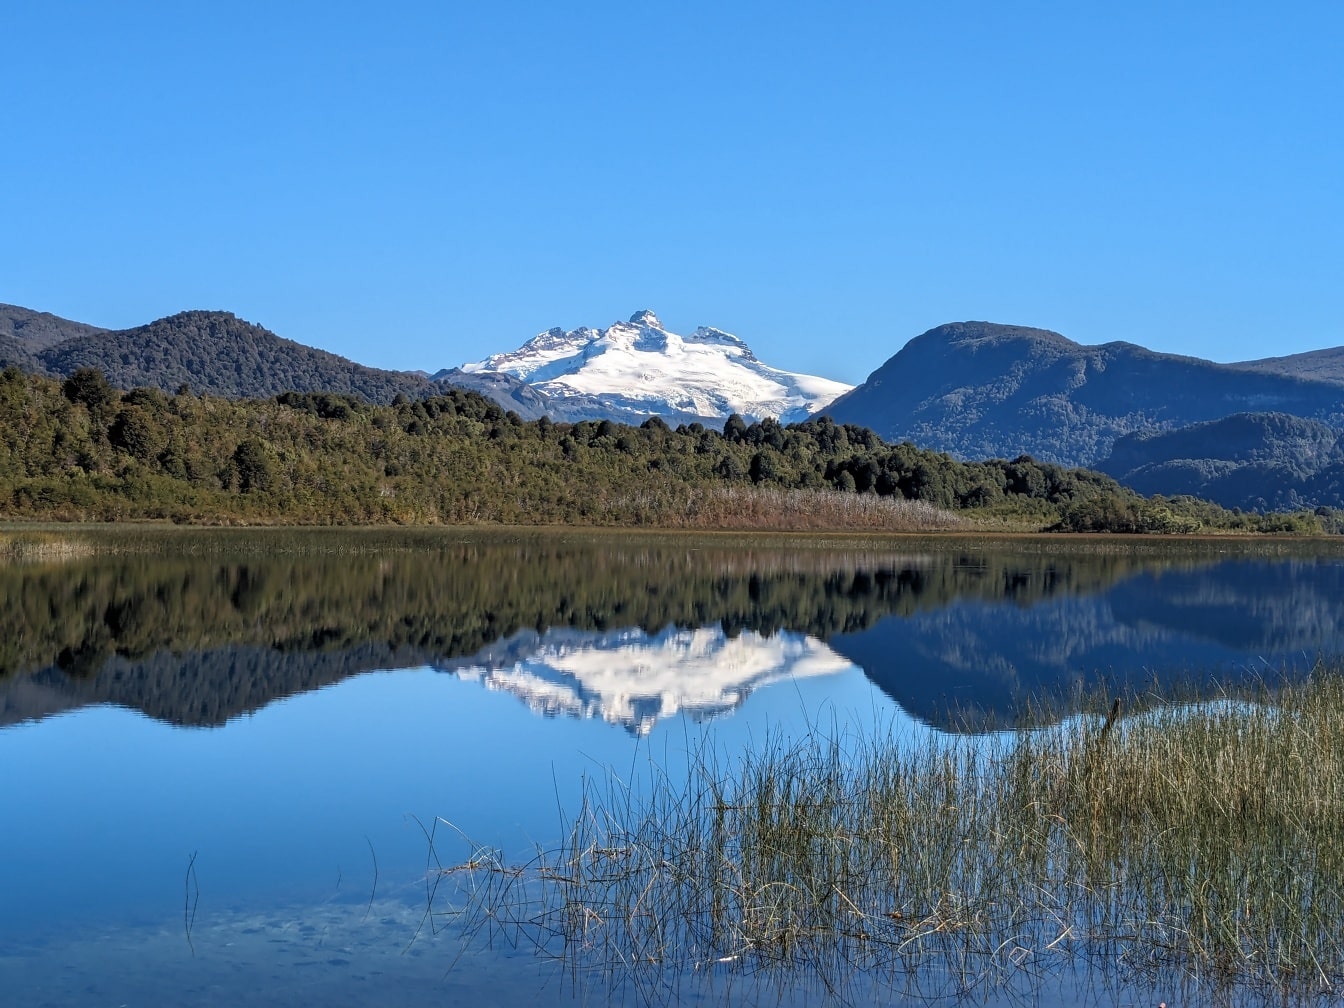 ทะเลสาบ Lago Hess ในอุทยานแห่งชาติ Nahuel Huapi ในจังหวัด Rio Negro ในอาร์เจนตินาโดยมีภูเขาเป็นฉากหลัง